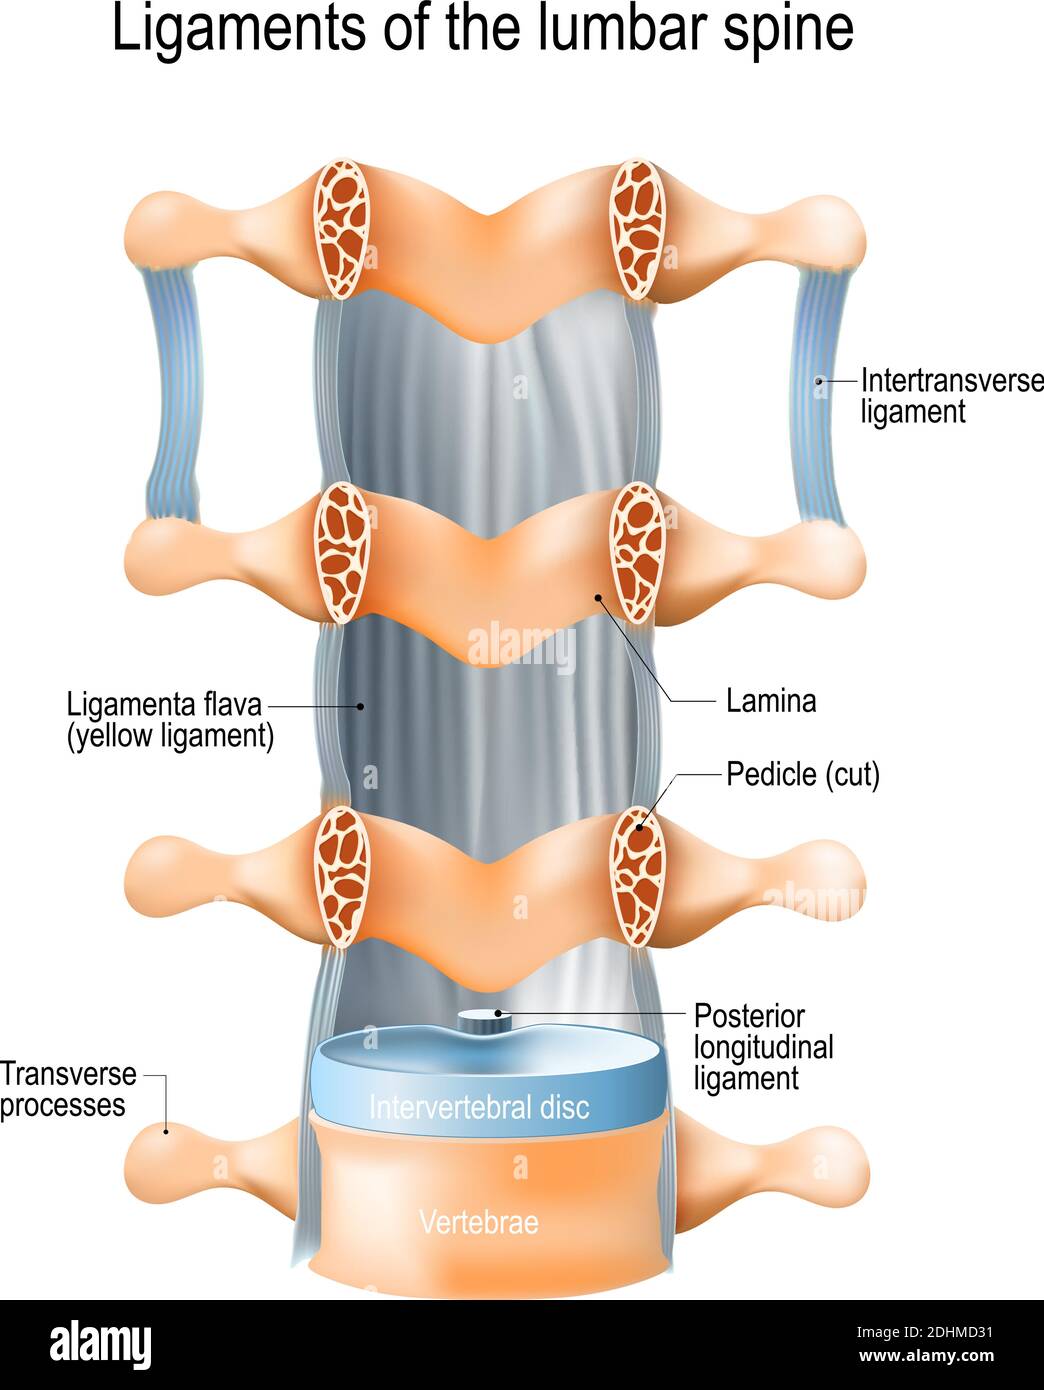 Legamenti della colonna lombare: Ligamenta flava (legamento giallo), legamenti longitudinali intertrasversali e posteriori Illustrazione Vettoriale